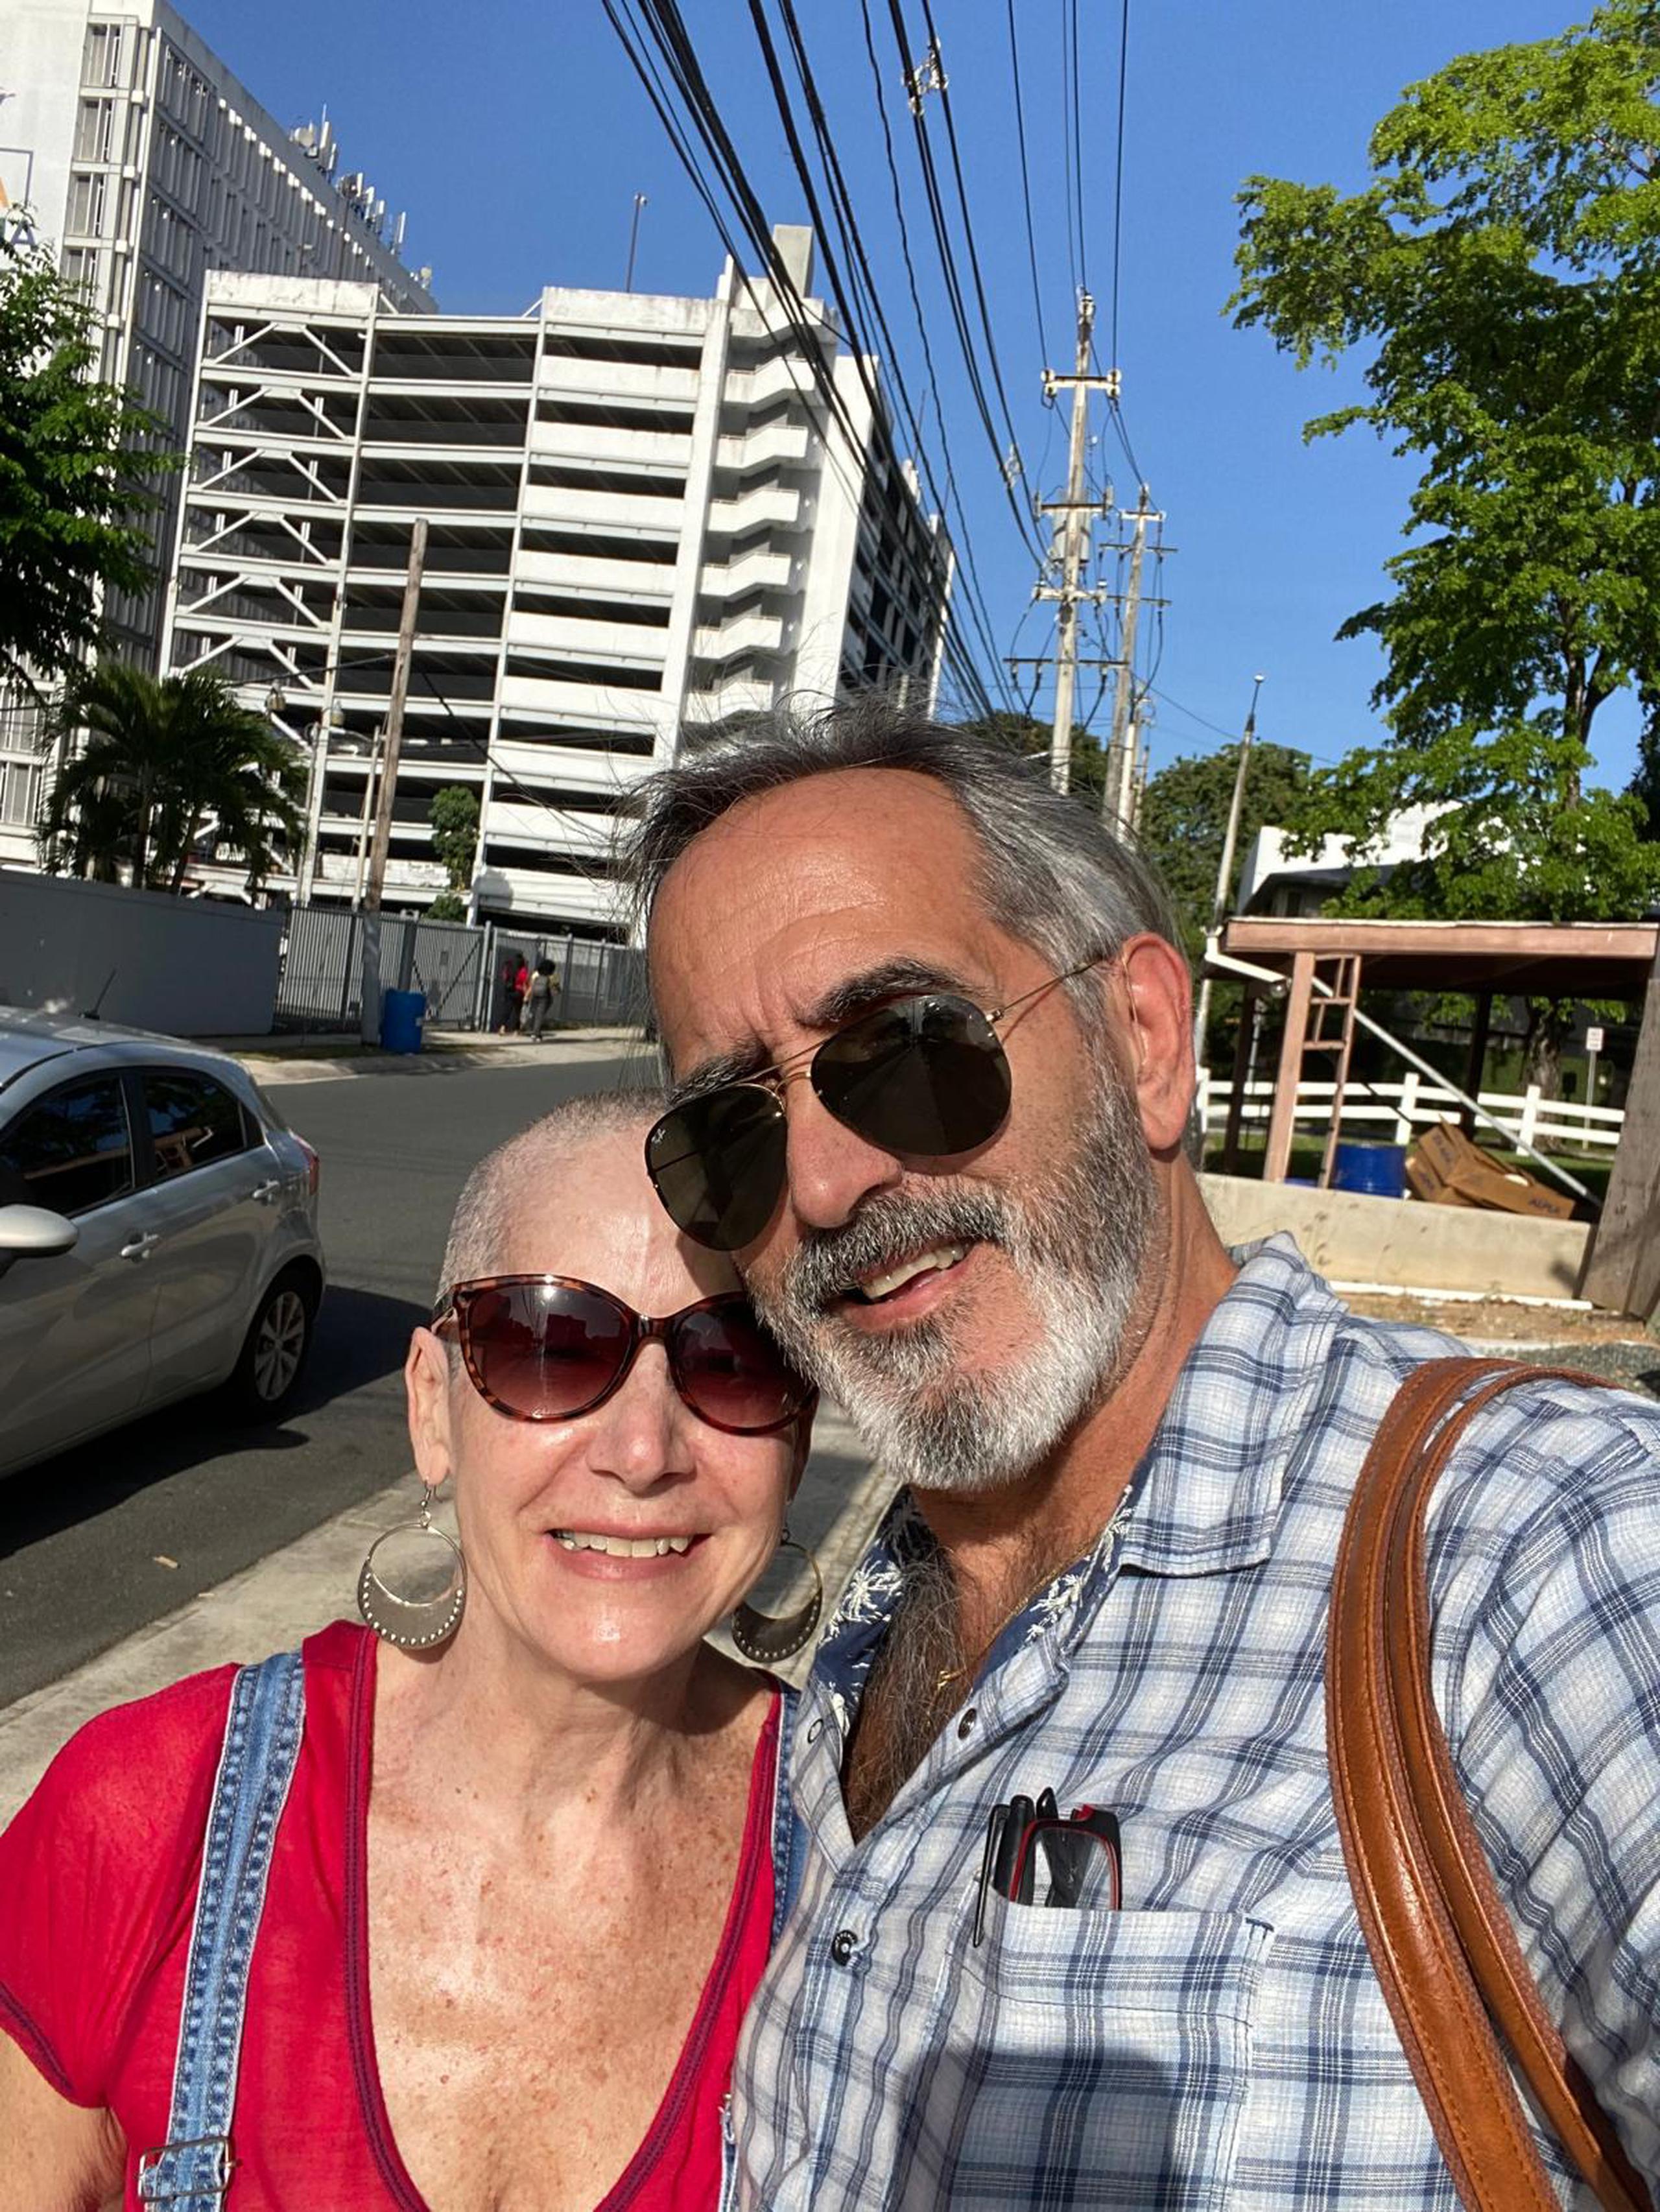 Lo que había sido una amistad por cerca de 14 años entre Marian Pabón y Ronald Borrás, se fortaleció como una relación de pareja durante la enfermedad.